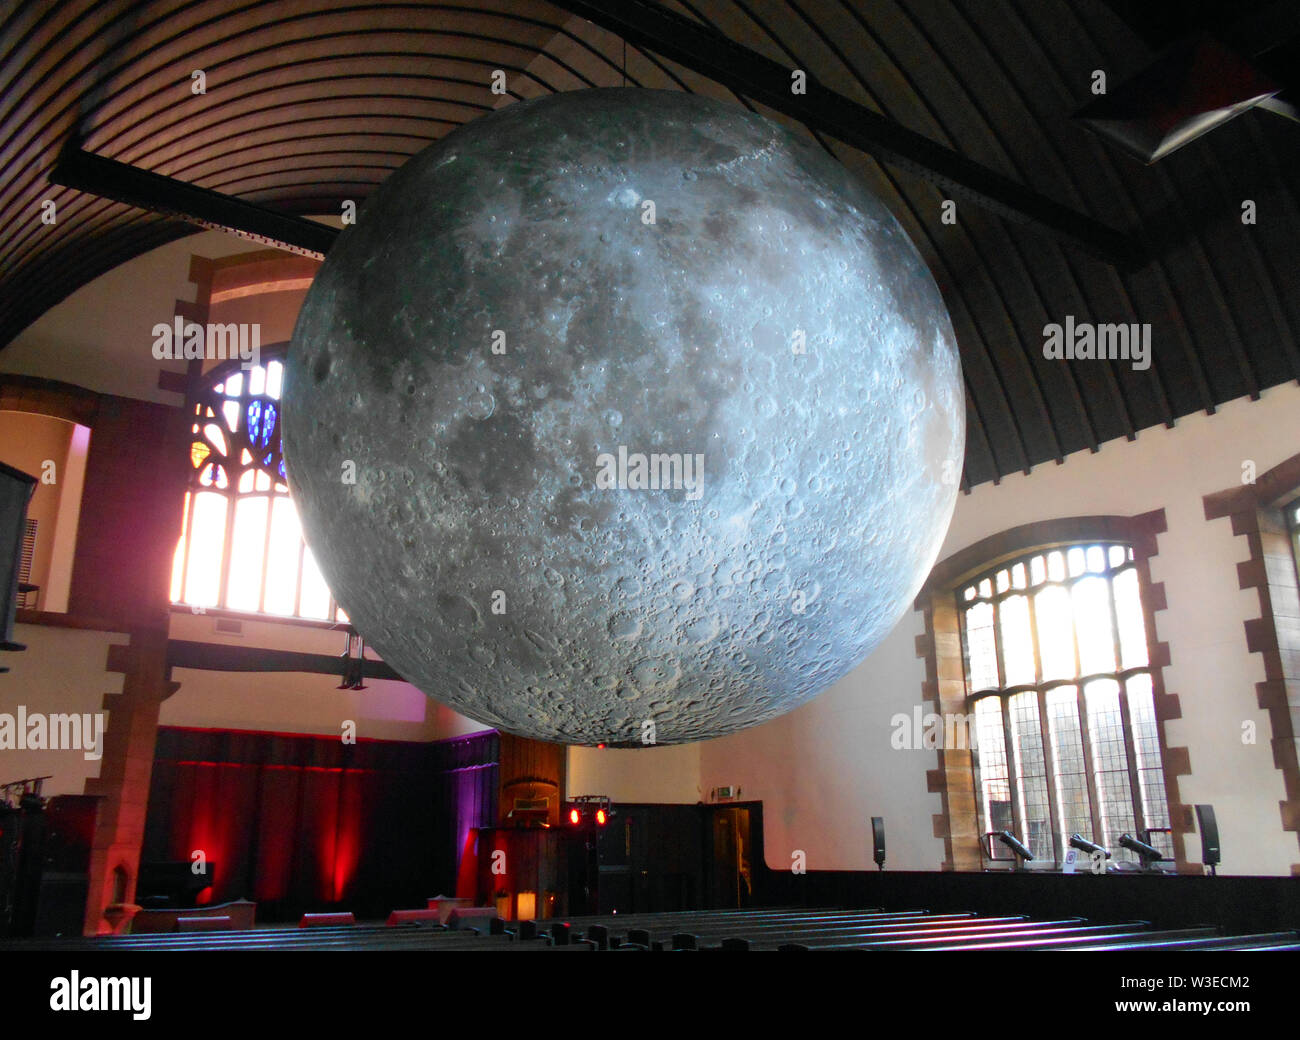 Diese massive Kunstwerk ist aufgerufen, das Museum des Mondes, und ist 7 Meter im Durchmesser und ist aus vielen, genaue Bilder von der NASA von der Mondoberfläche gemacht und ist im Maßstab 1:500.000. Jeder Zentimeter des intern beleuchtet kugelförmige Skulptur stellt 5 km der Mondoberfläche. Der Künstler ist Luke Jerram und dieses Foto ist von Glasgow, wo sie auf Anzeige im Jahr 2018 war. ALAMY/Alan Wylie © Stockfoto